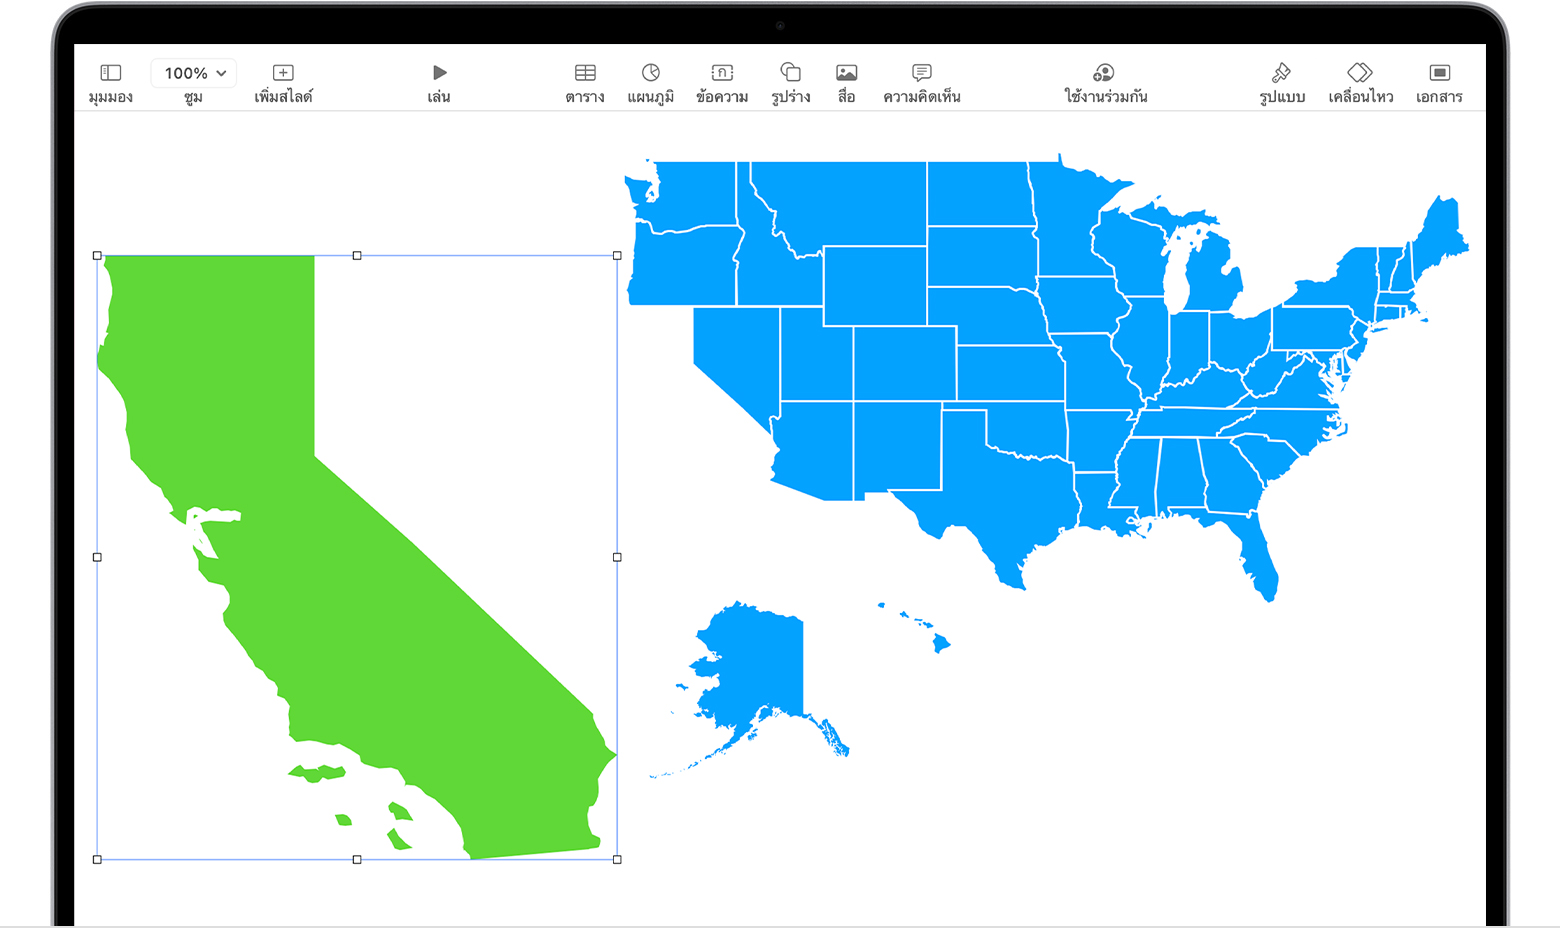 Keynote บน Mac ที่แสดงรูปร่างของรัฐแคลิฟอร์เนียที่เลือกถัดจากรูปร่างของประเทศสหรัฐอเมริกา